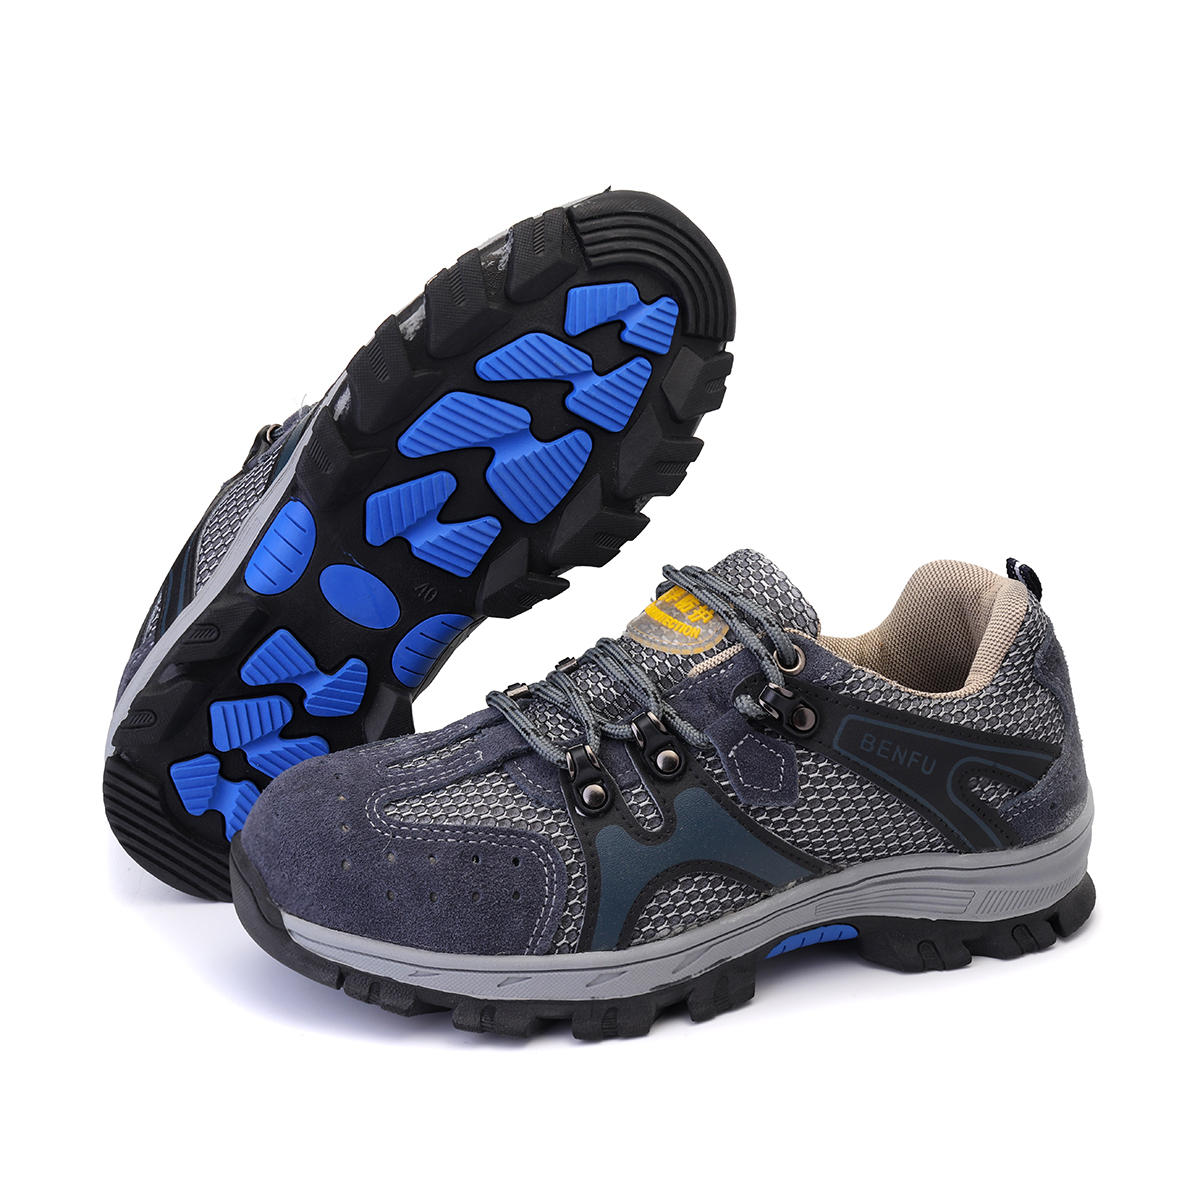 لدي حذاء أمان للرجال من TENGOO يحتوي على أصبع من الصلب وحذاء رياضي مضاد للانزلاق ومنفذ للتنفس ومناسب للمشي والتسلق والجري.